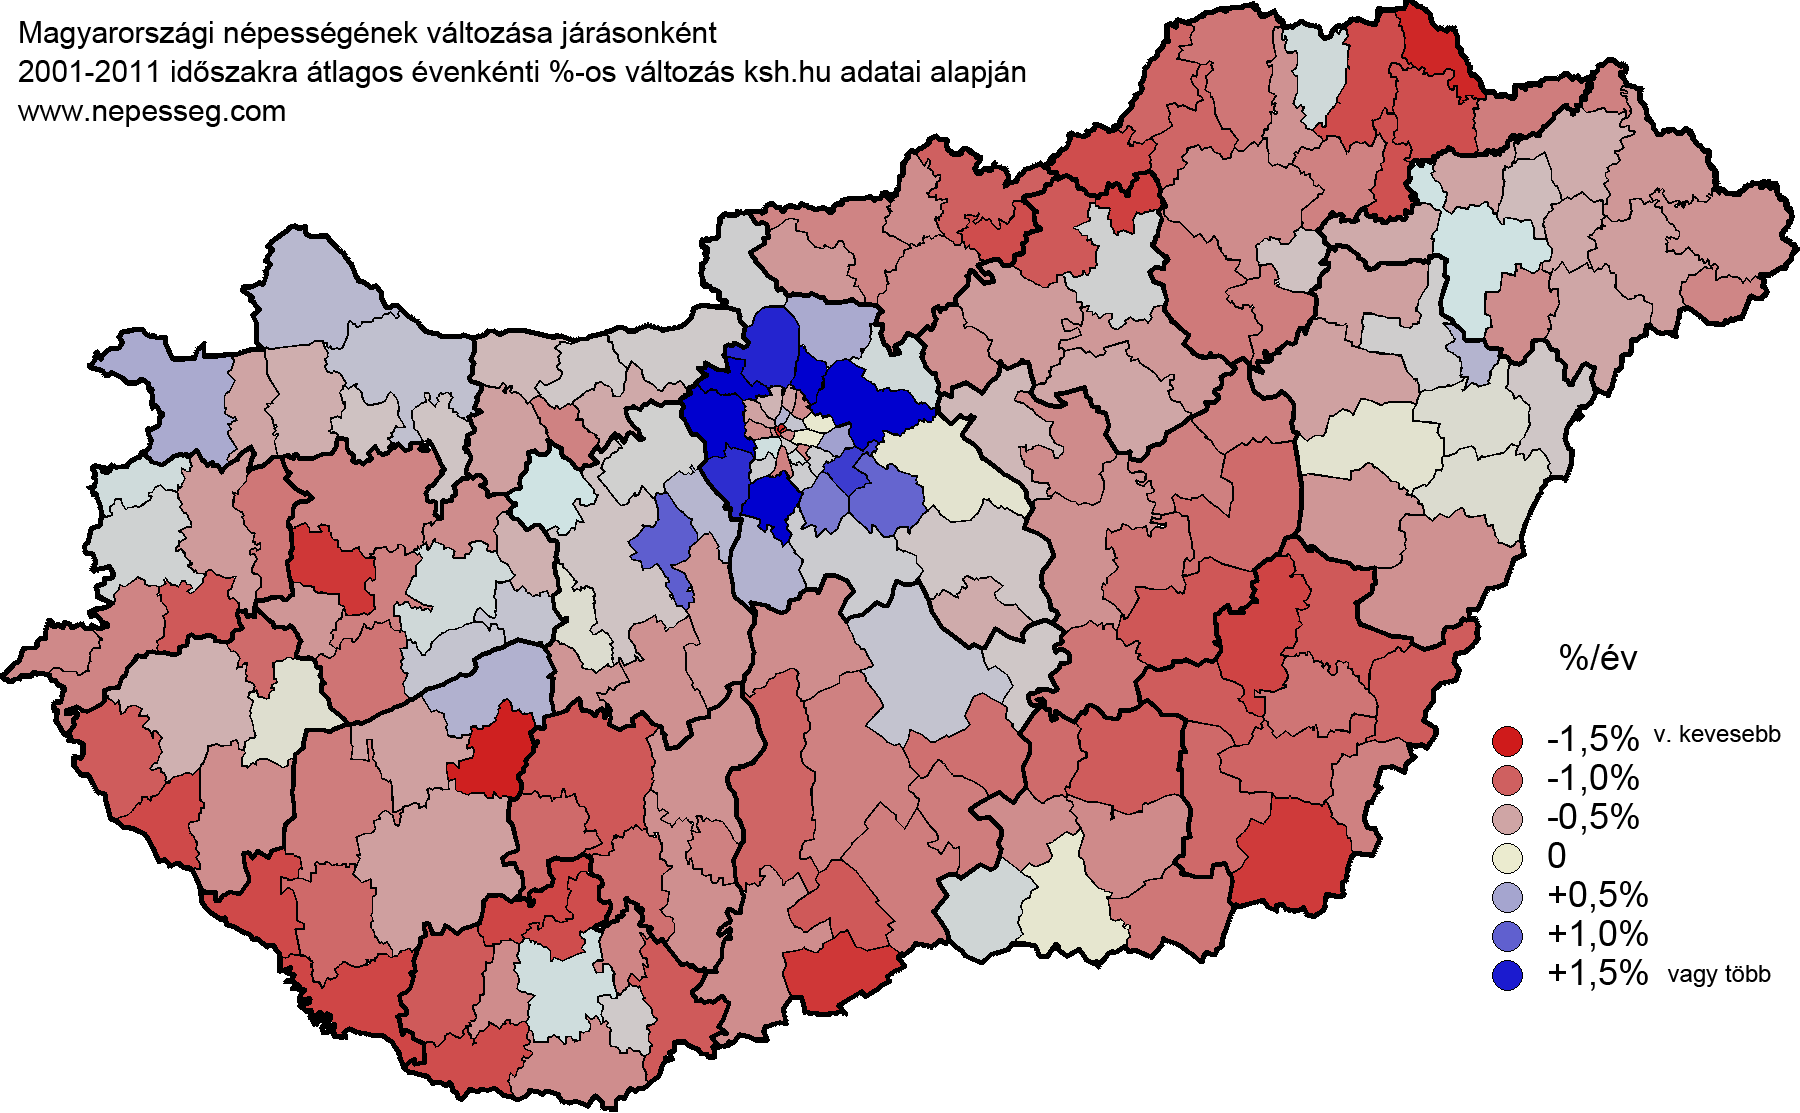 magyarország járásai térkép Magyarország járások népessége, népsűrűsége magyarország járásai térkép